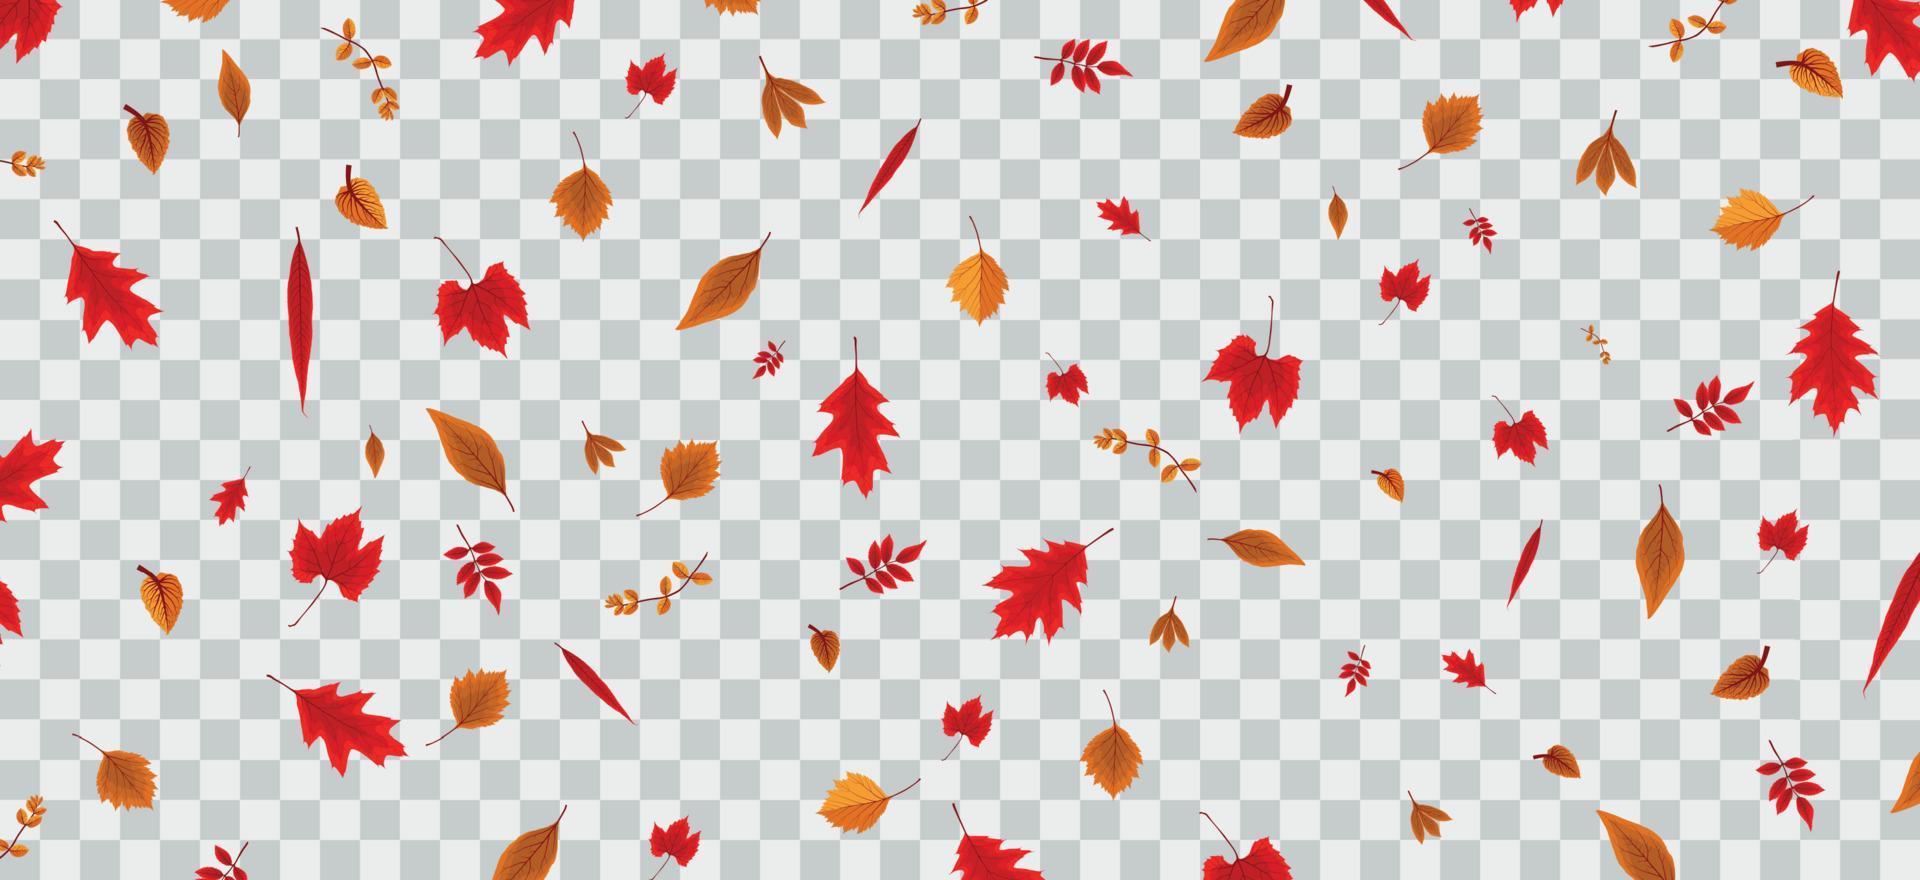 vallende kleurrijke herfstbladeren op transparante achtergrond. vectorillustratie. vector